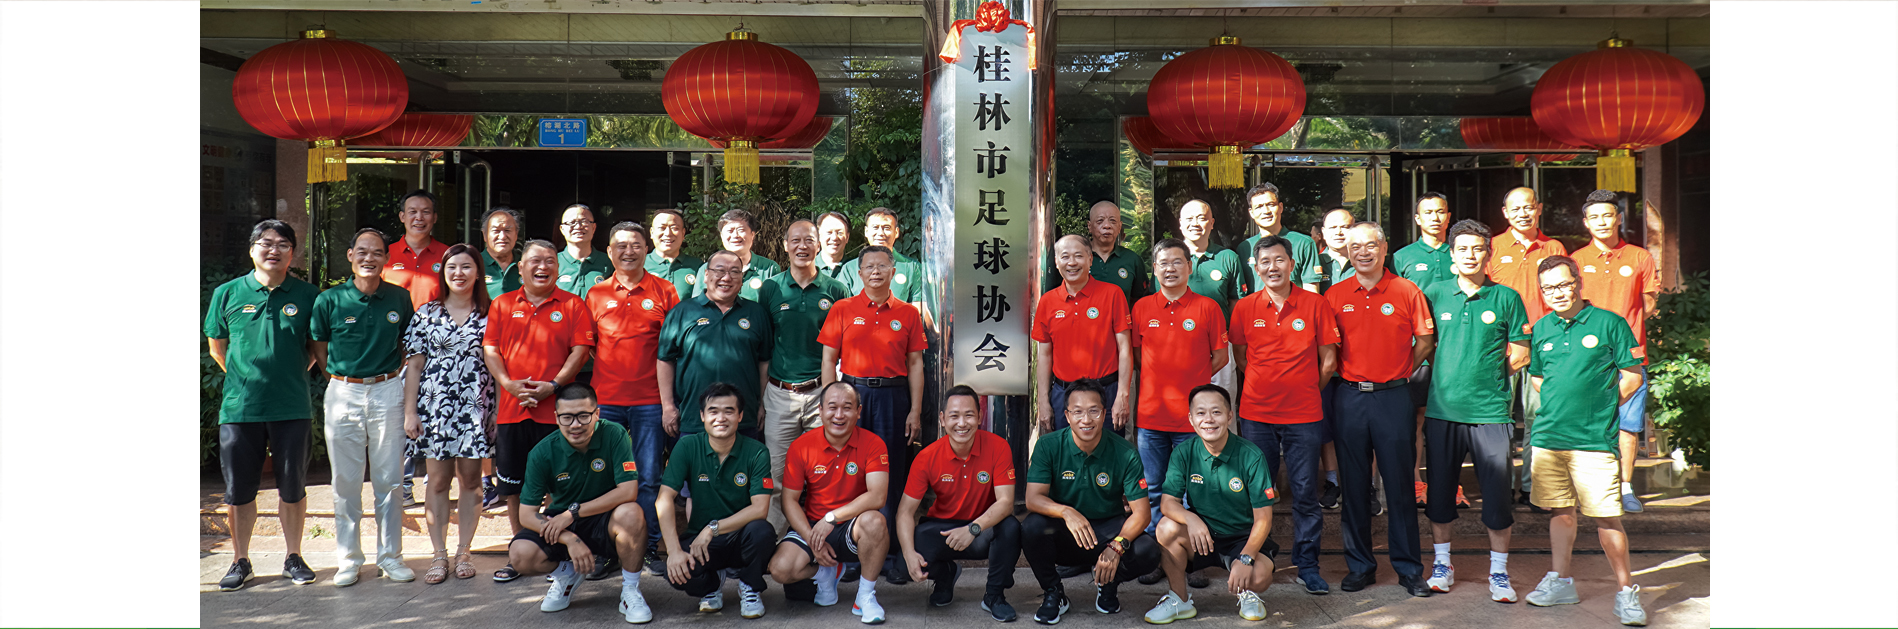 桂林足球有了新“家” ——桂林市足球协会今日在榕湖北路一号举行揭牌仪式